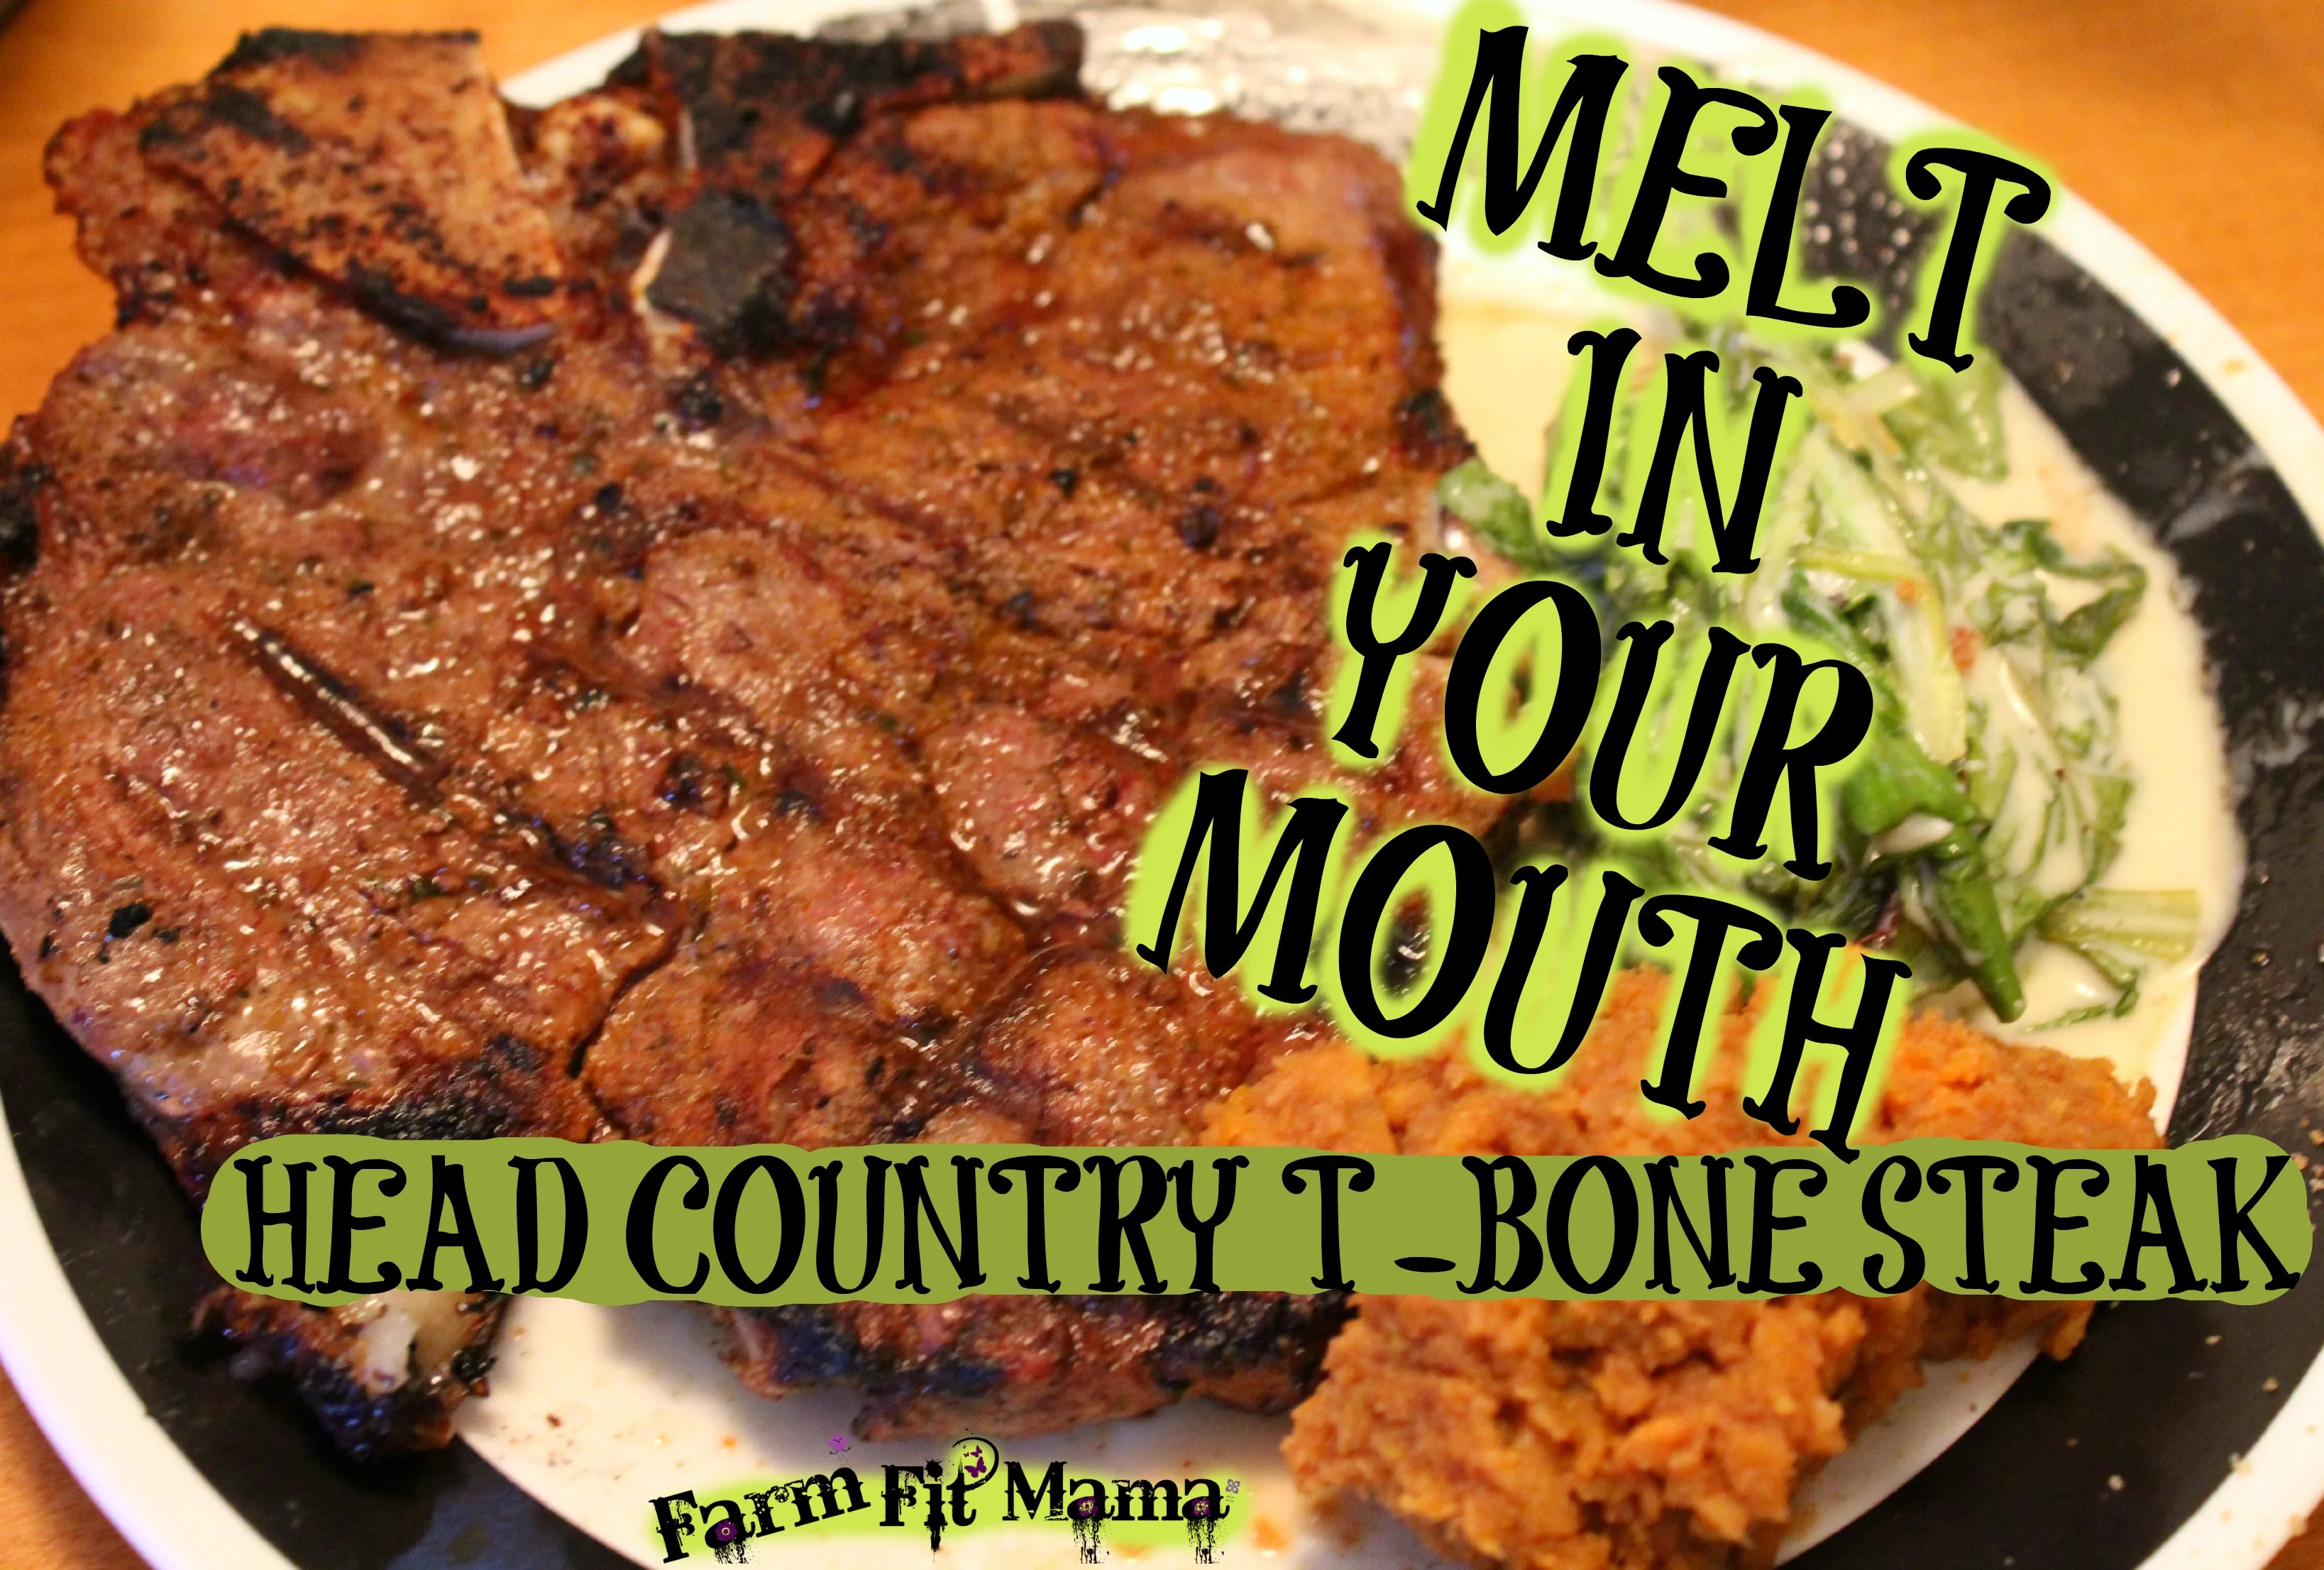 Head Country T-Bone Steaks